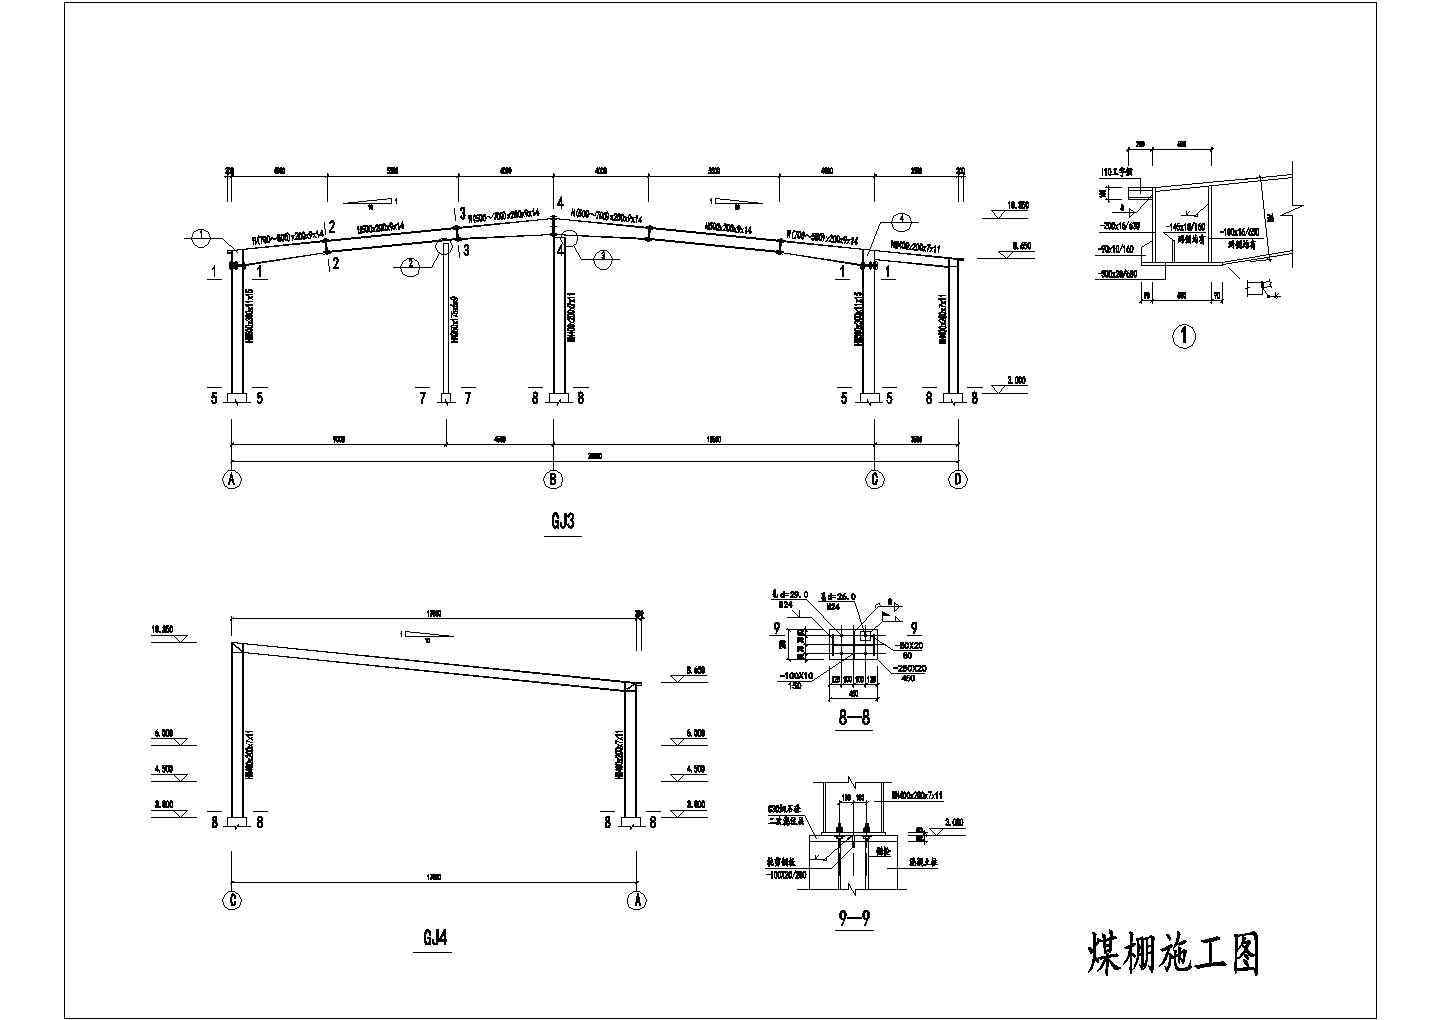 包头市某机械厂27米L型平面钢结构厂房全套结构设计CAD图纸